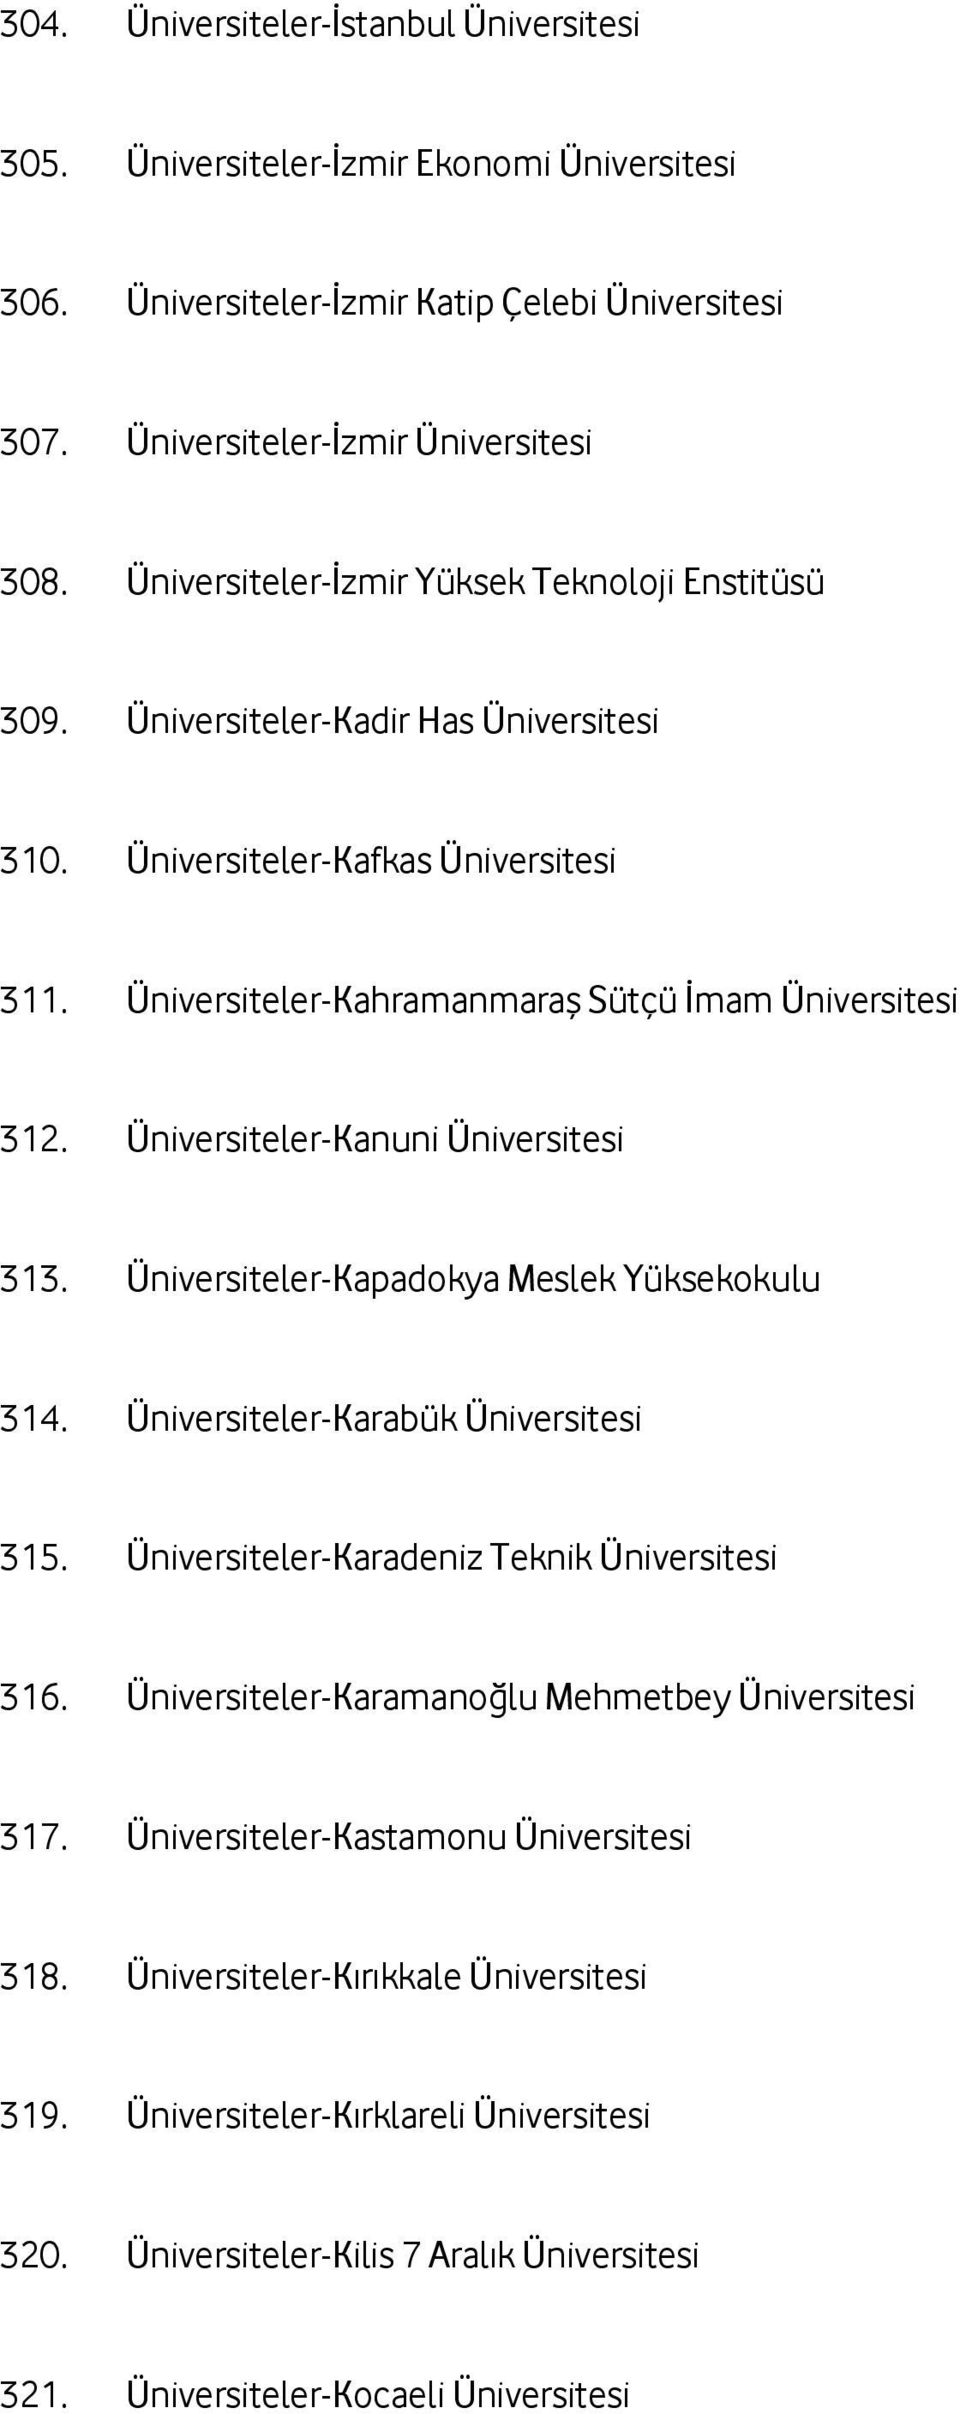 Üniversiteler-Kanuni Üniversitesi 313. Üniversiteler-Kapadokya Meslek Yüksekokulu 314. Üniversiteler-Karabük Üniversitesi 315. Üniversiteler-Karadeniz Teknik Üniversitesi 316.